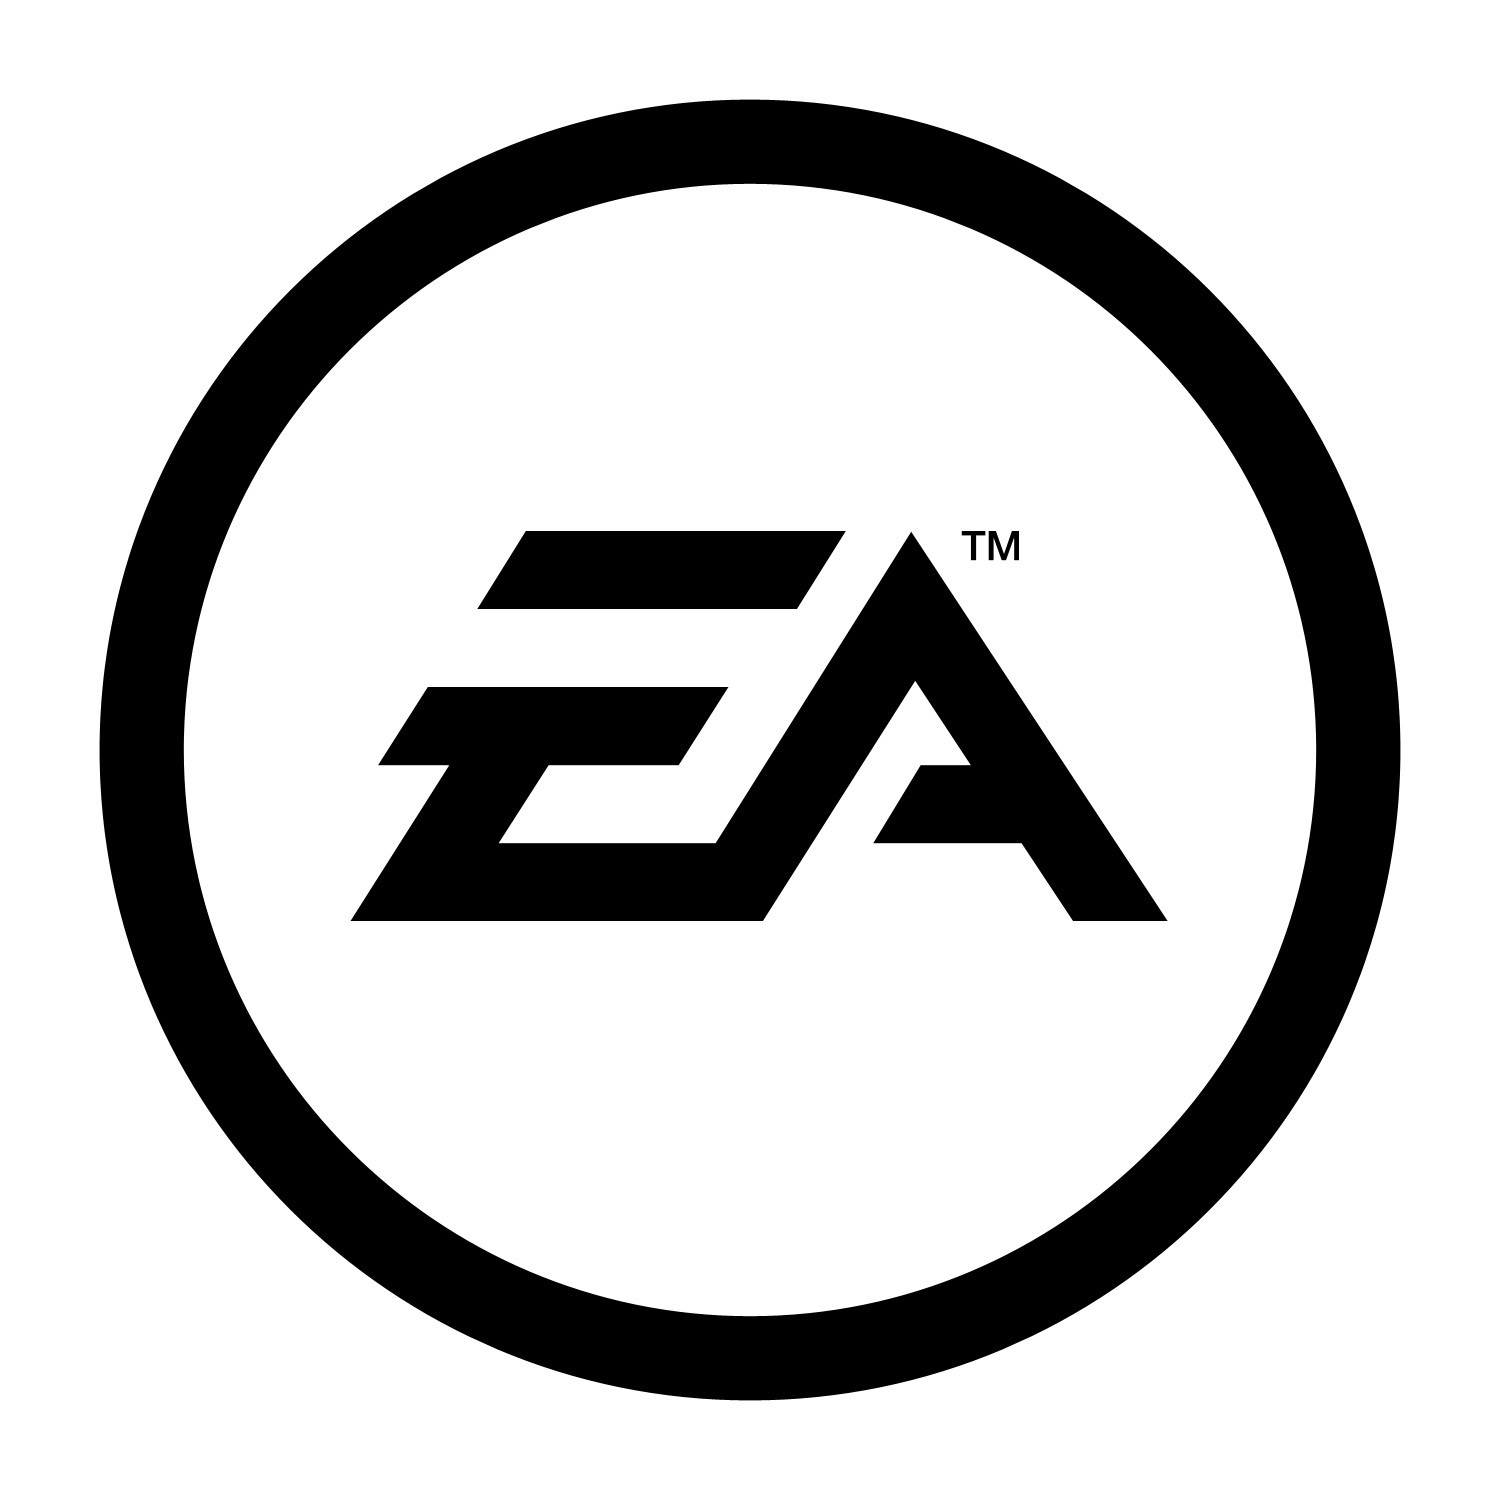 Do jakiej formy produkującej gry komputerowe należy to logo?